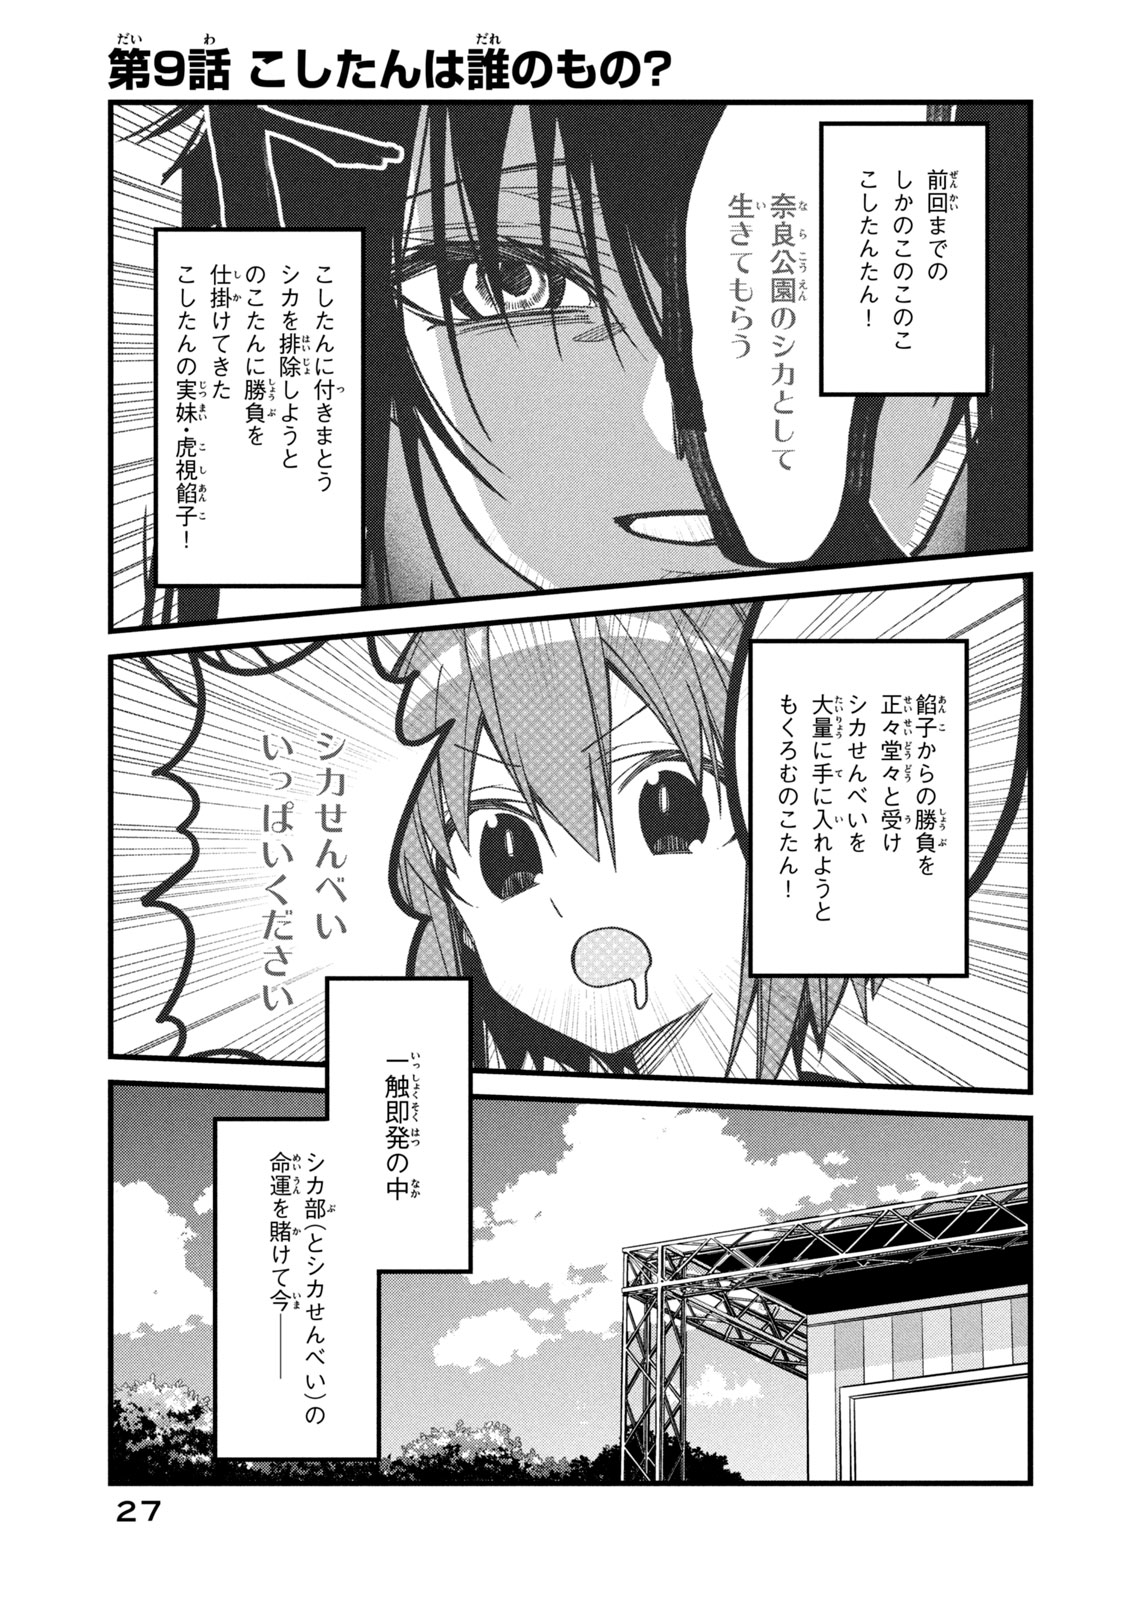 Shikanoko Nokonoko Koshitantan - Chapter 9 - Page 1